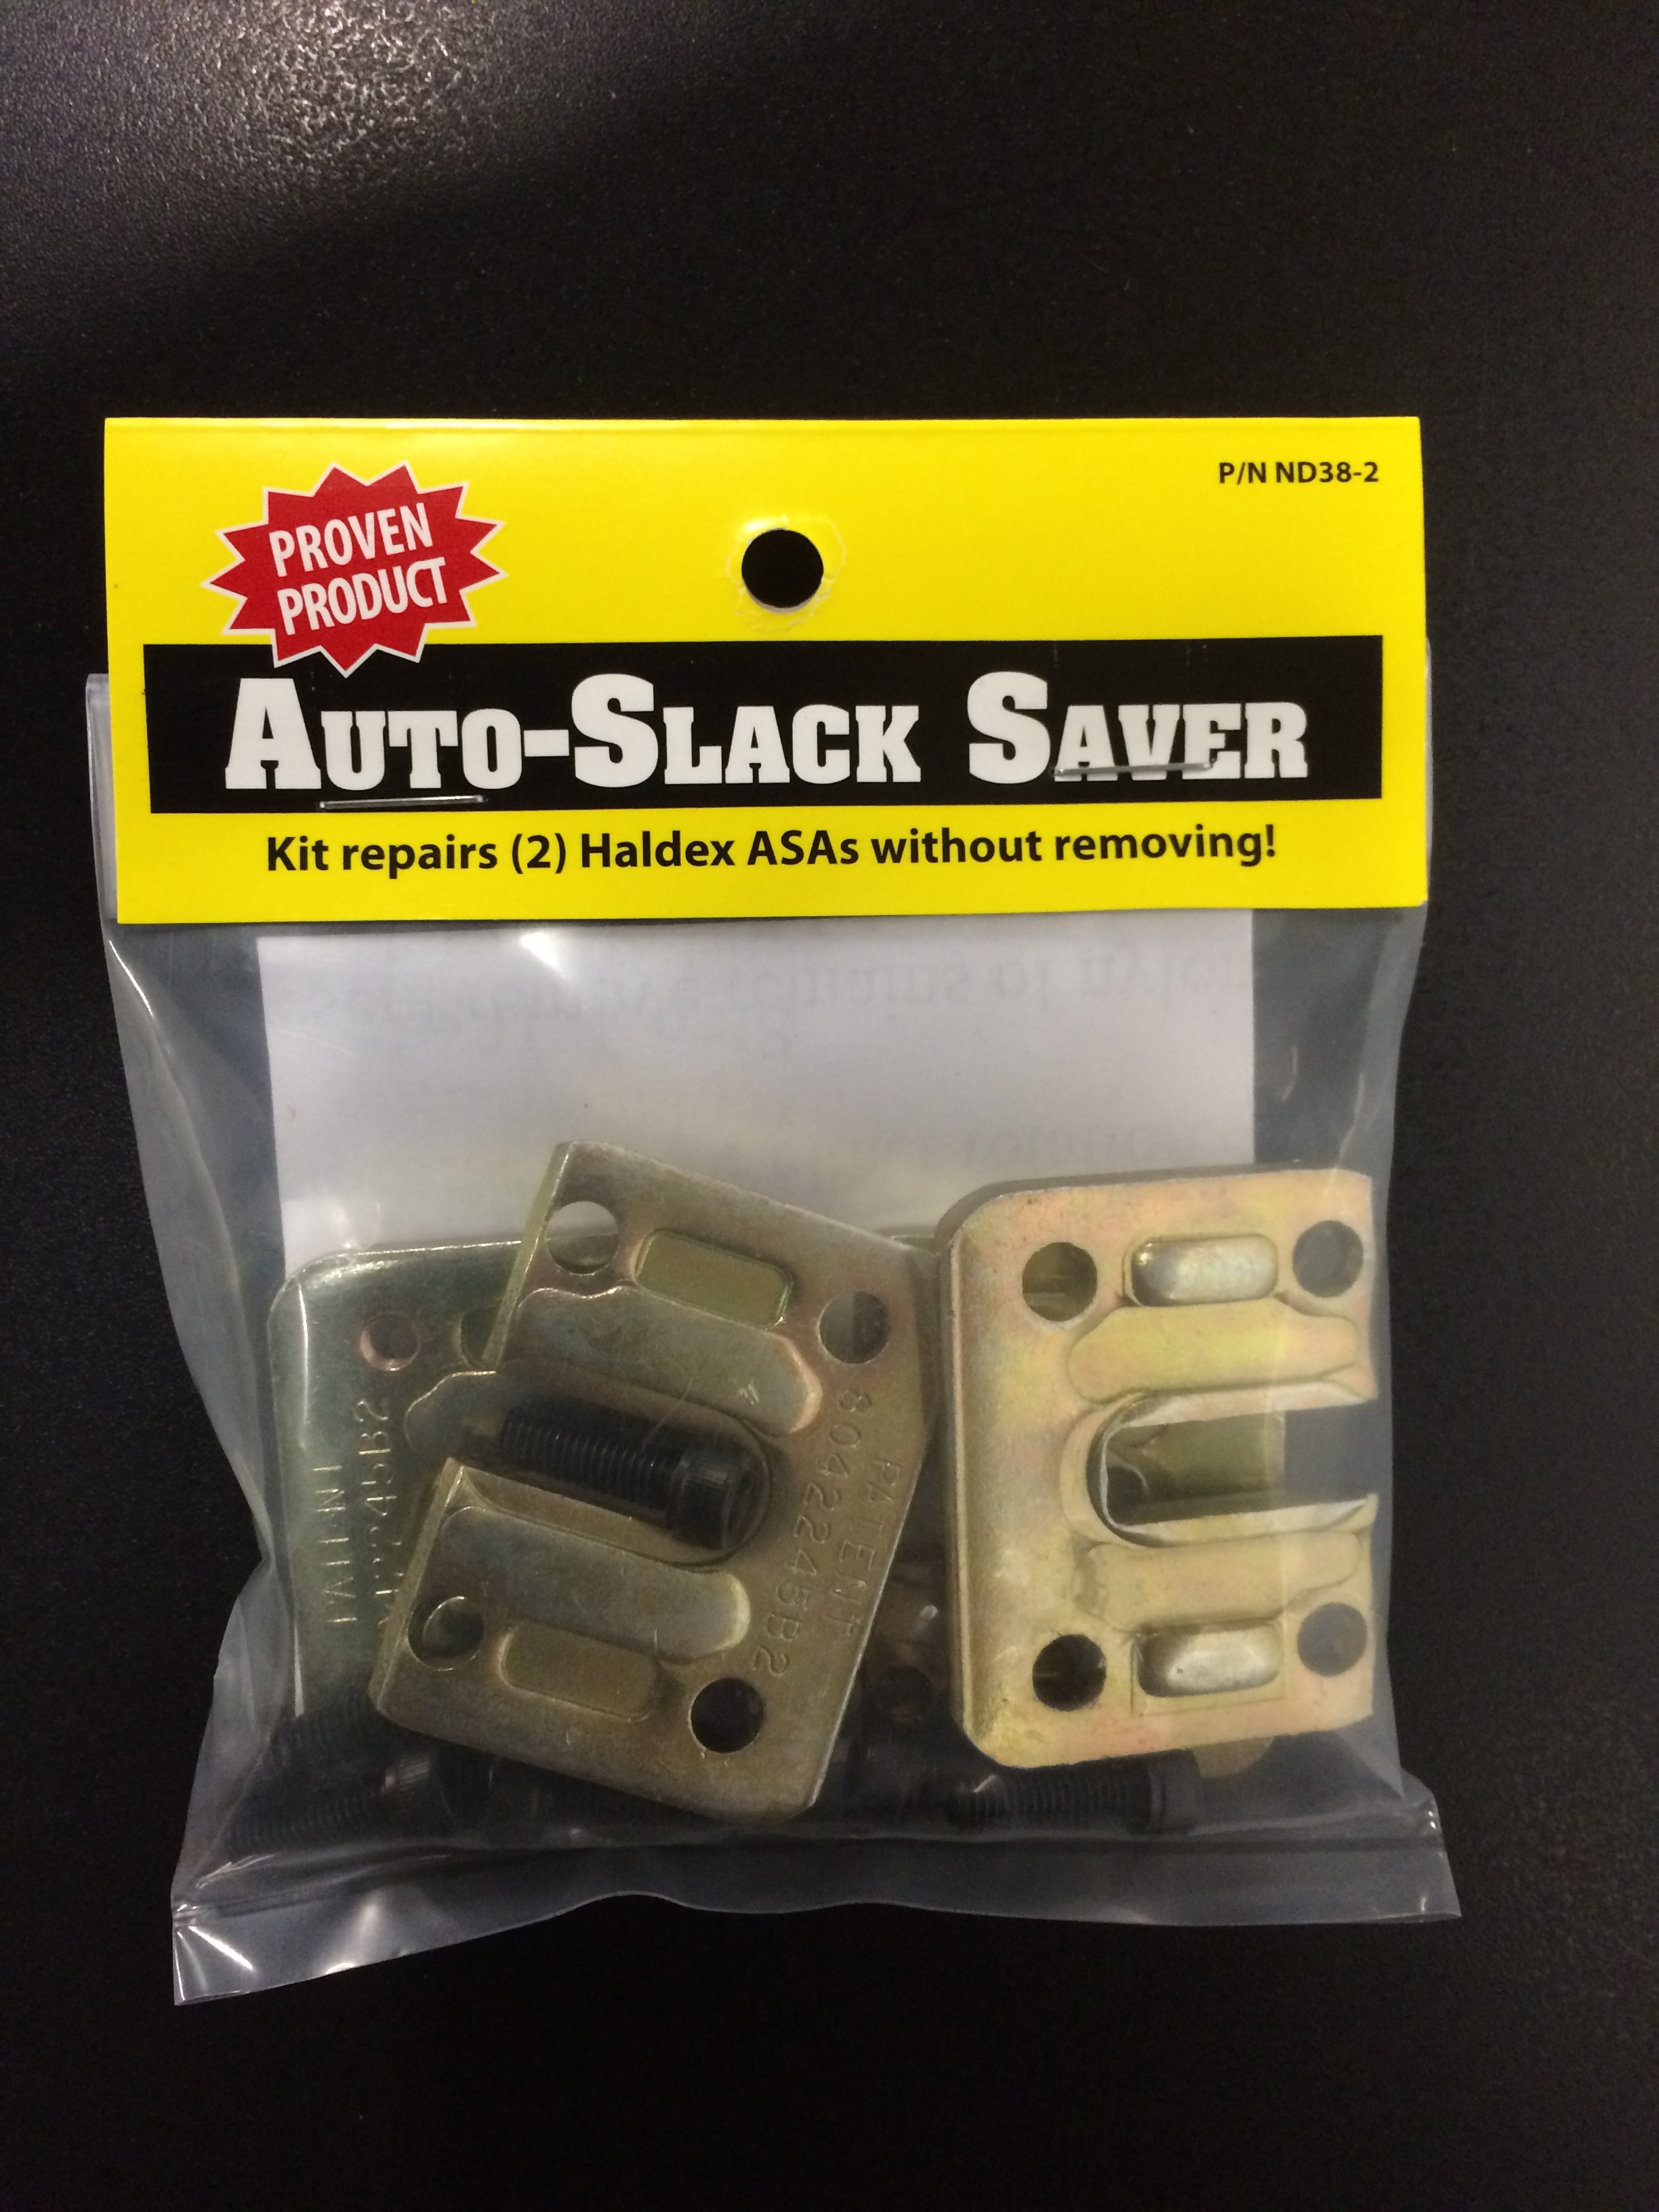 Auto-Slack Saver Kit